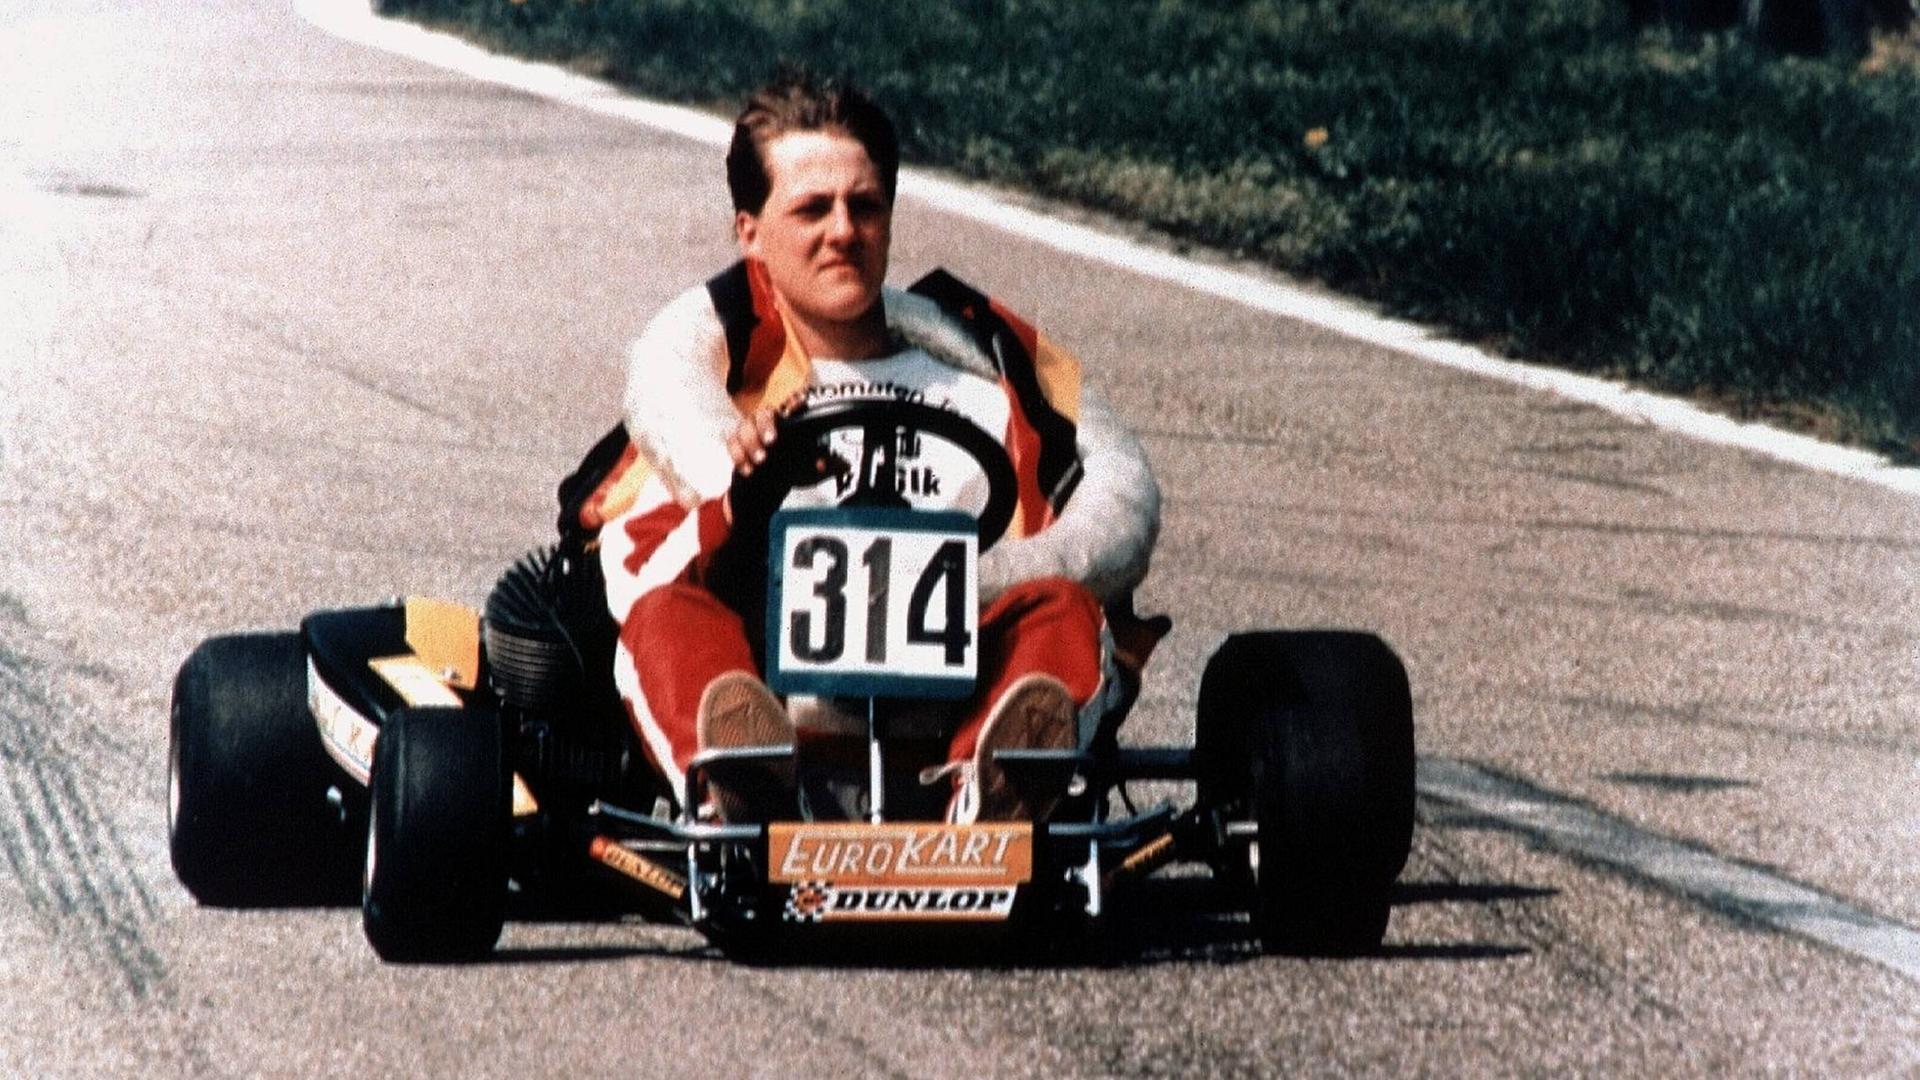 Wie fast alle großen Rennfahrer beginnt auch Michael Schumacher seine Laufbahn im Go-Kart. 1987 wird er Europameister.